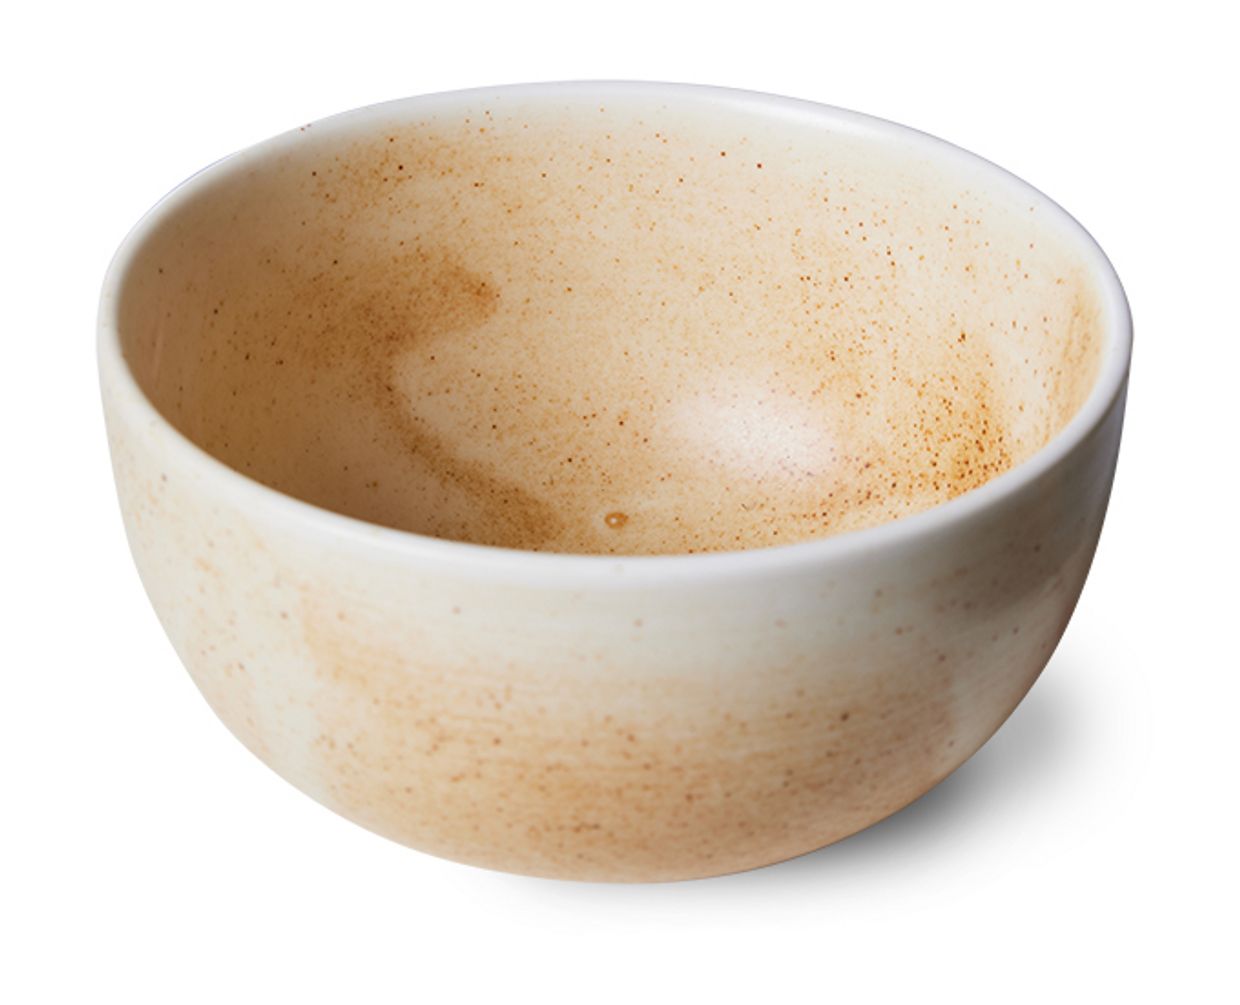 Chef ceramics: bowl, rustic cream/brown